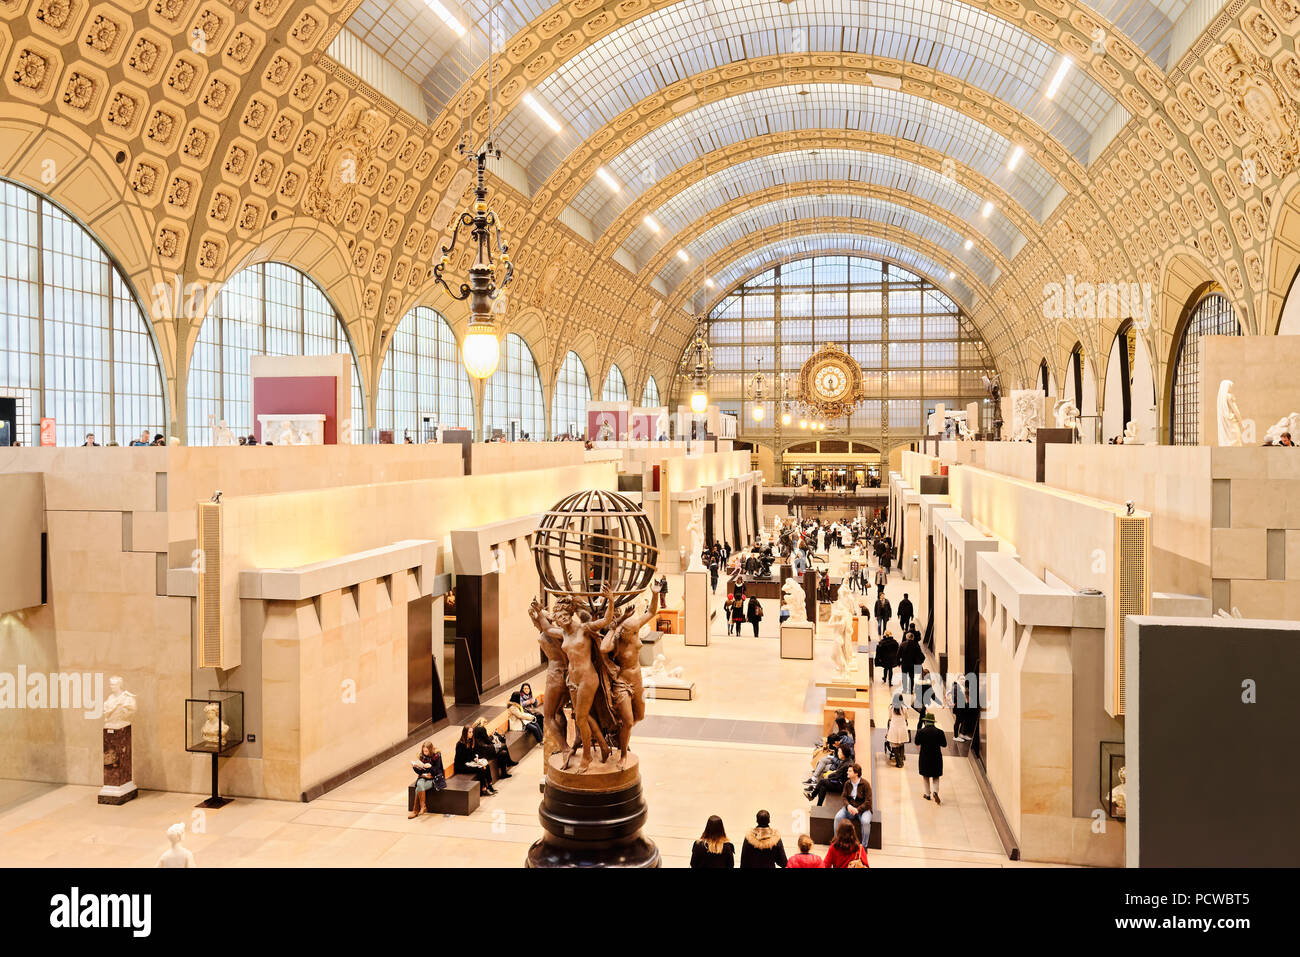 Musee d'Orsay in Paris, Frankreich. Eine erstaunliche Sammlung französischer Kunst aus den impressionistischen und post-impressionistischen Kunst Bewegungen befindet sich hier. Stockfoto